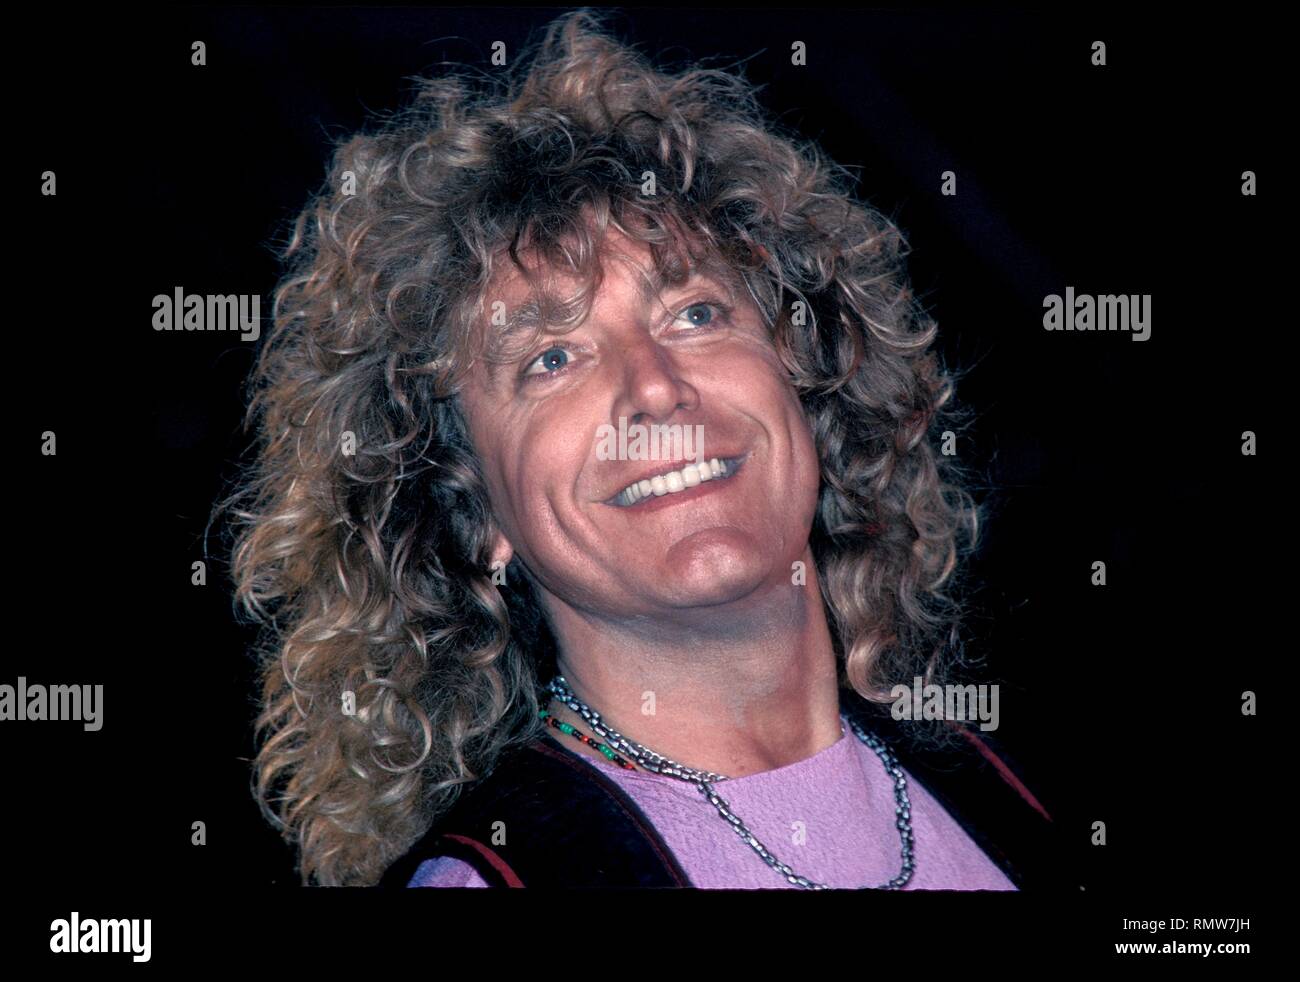 Il cantante rock e cantautore, Robert Plant, ex cantante dei Led Zeppelin, è mostrato il palcoscenico durante una 'live' aspetto di concerto. Foto Stock